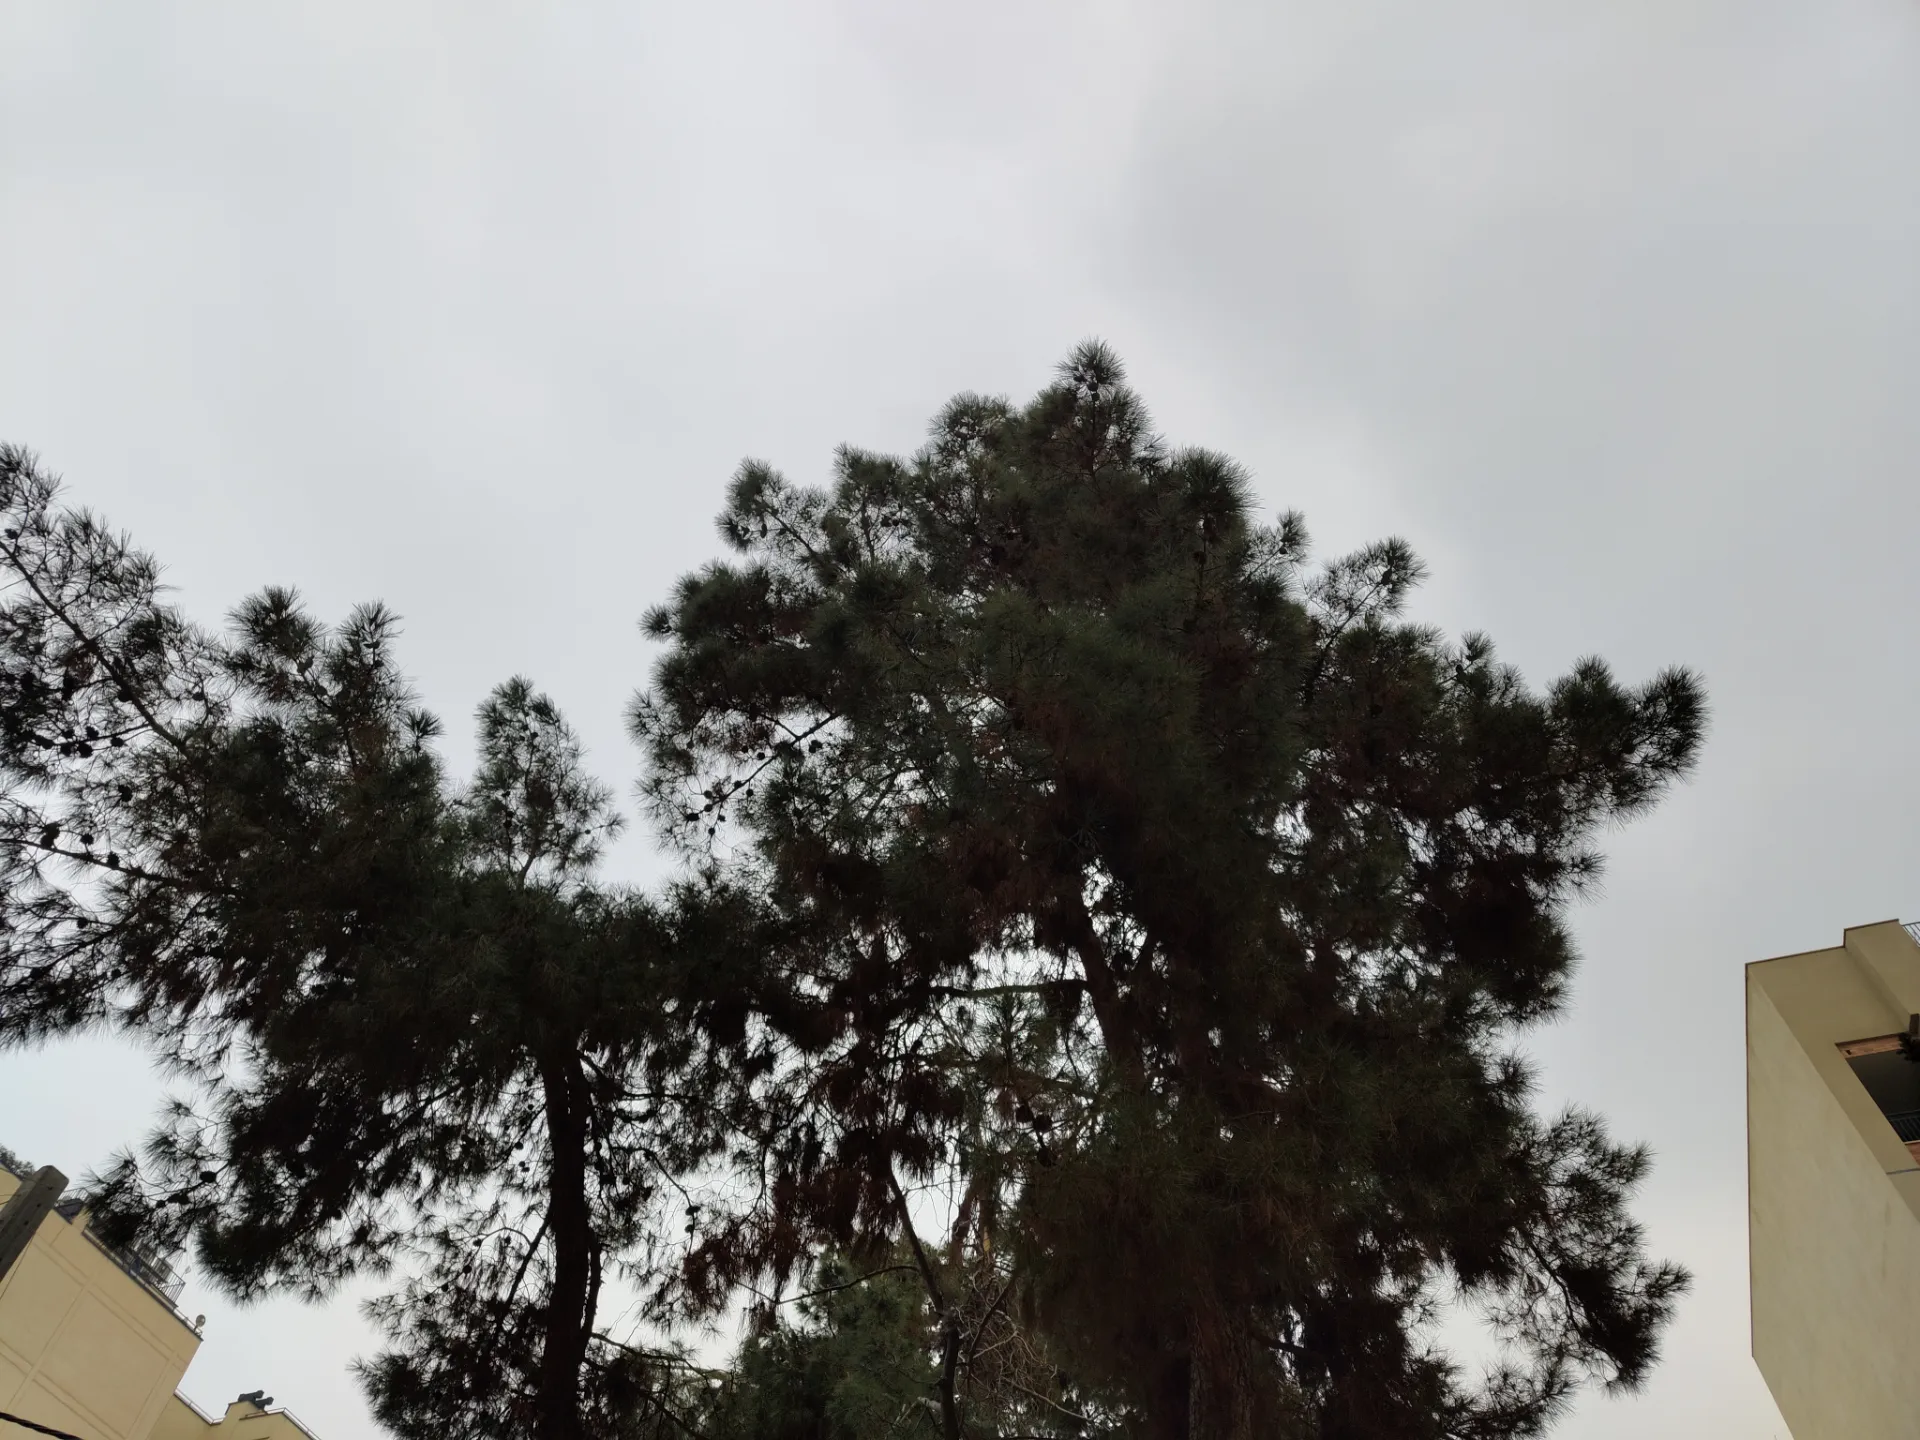 نمونه عکس ناتینگ فون ۱ در محیط خارجی با نور روز از چند درخت و پس زمینه آسمان